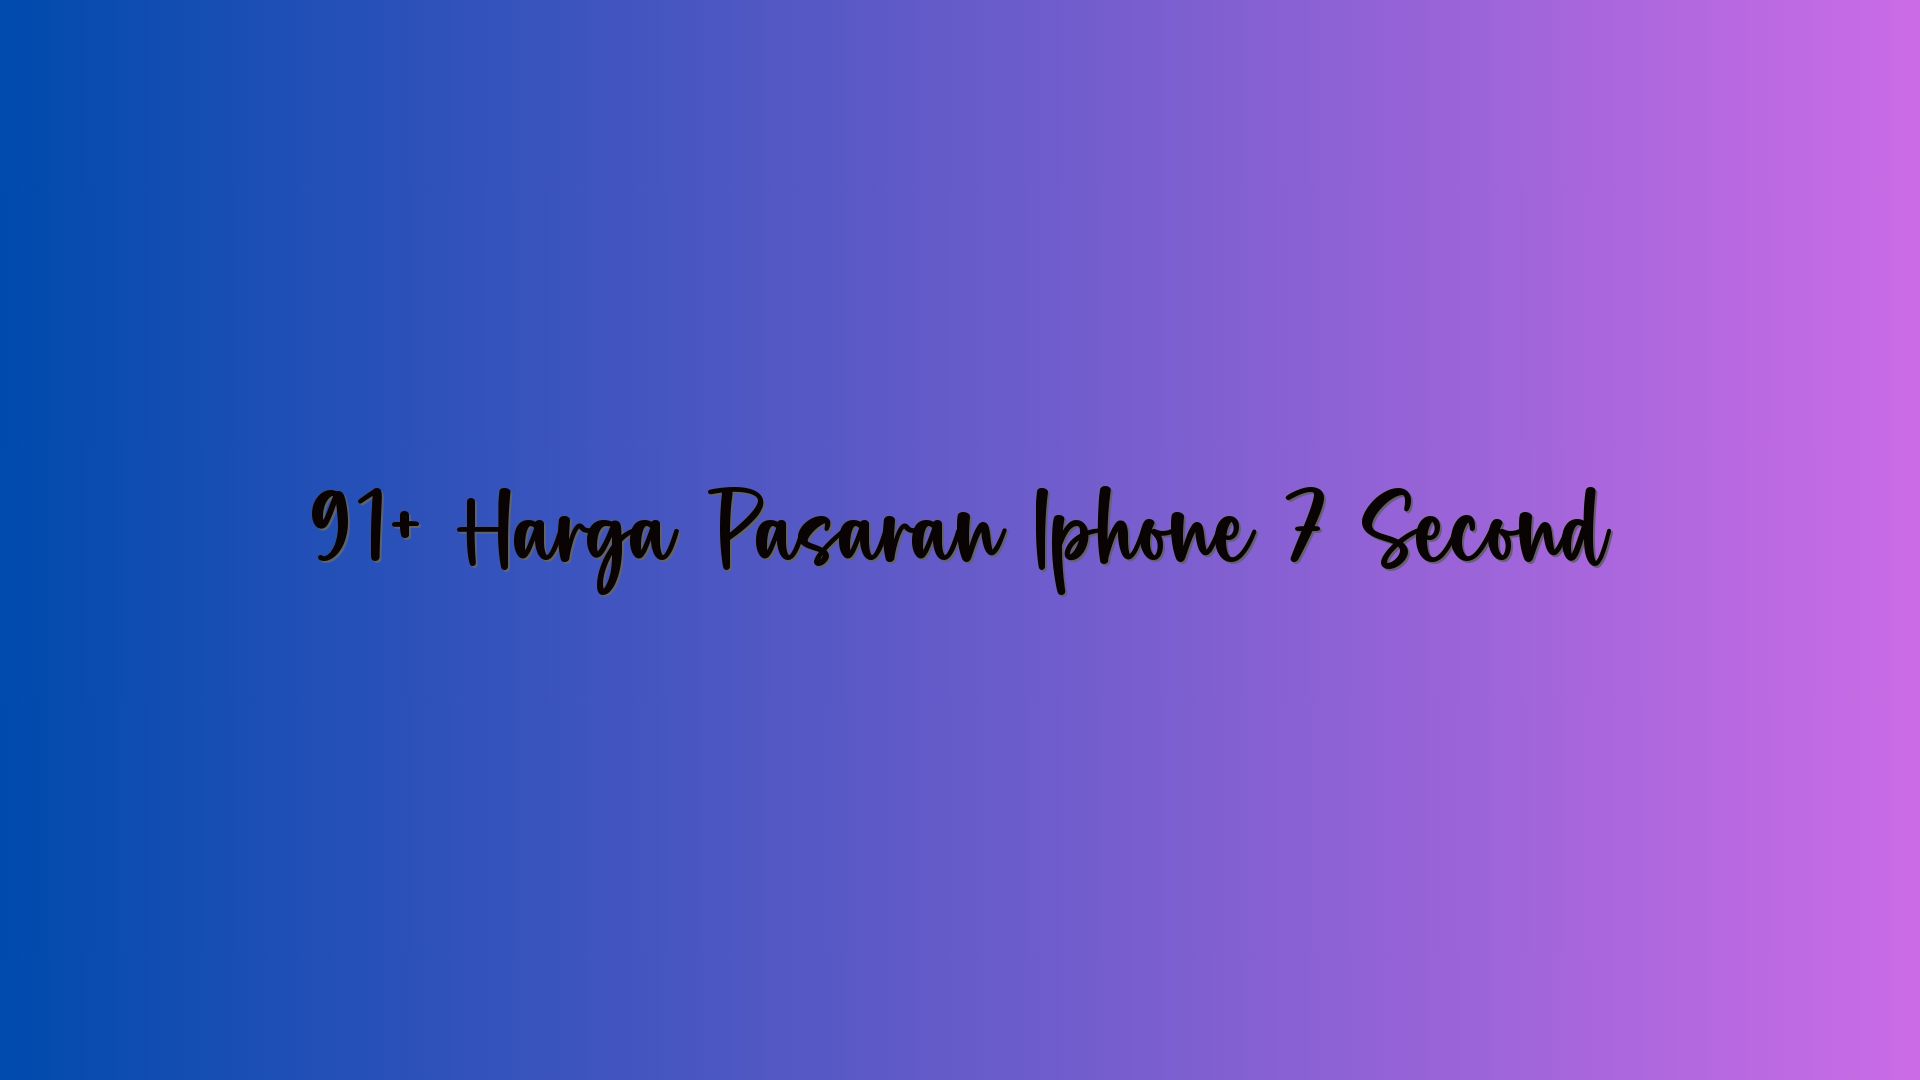 91+ Harga Pasaran Iphone 7 Second